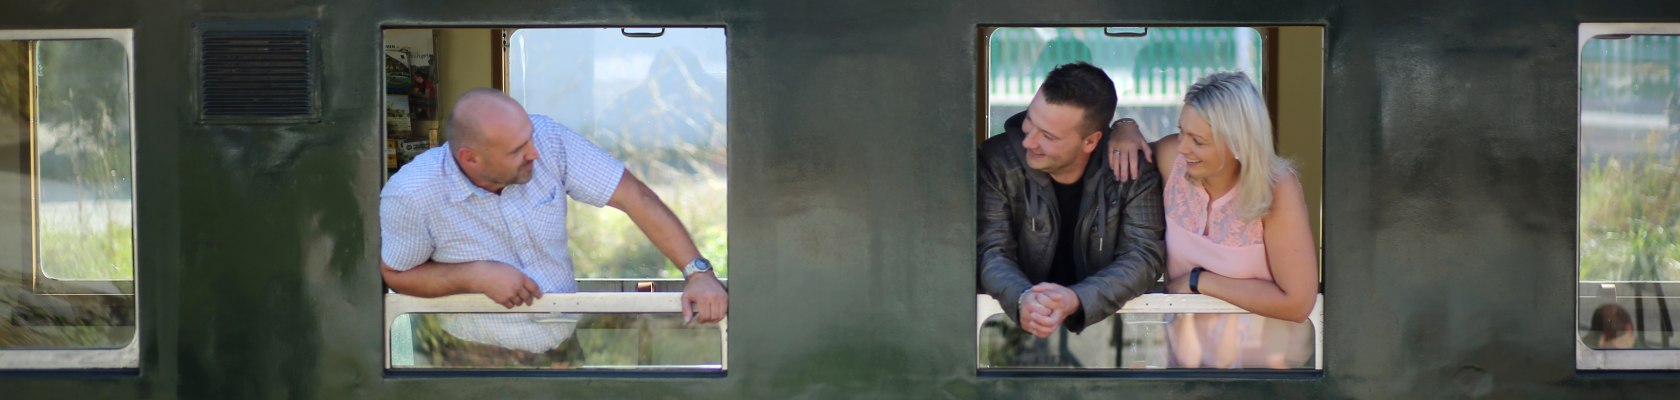 ein Mann lacht zwei weiteren Personen von einem Zugfenster aus zu